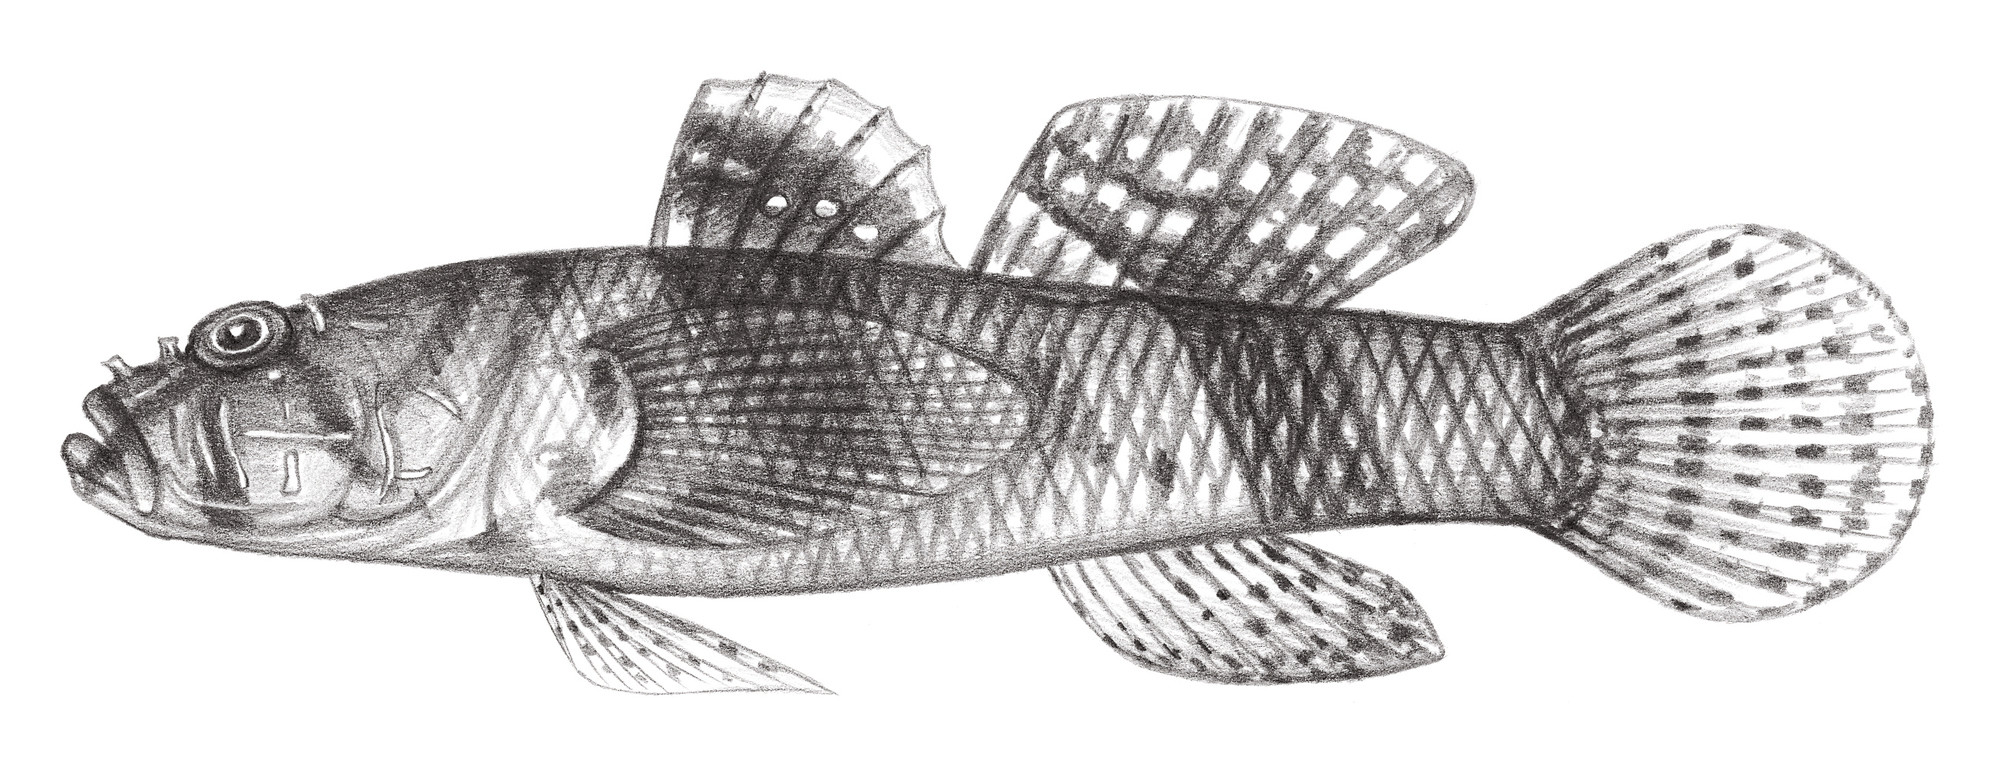 2103.	稜頭硬皮鰕虎 Callogobius sclateri (Steindachner, 1879)